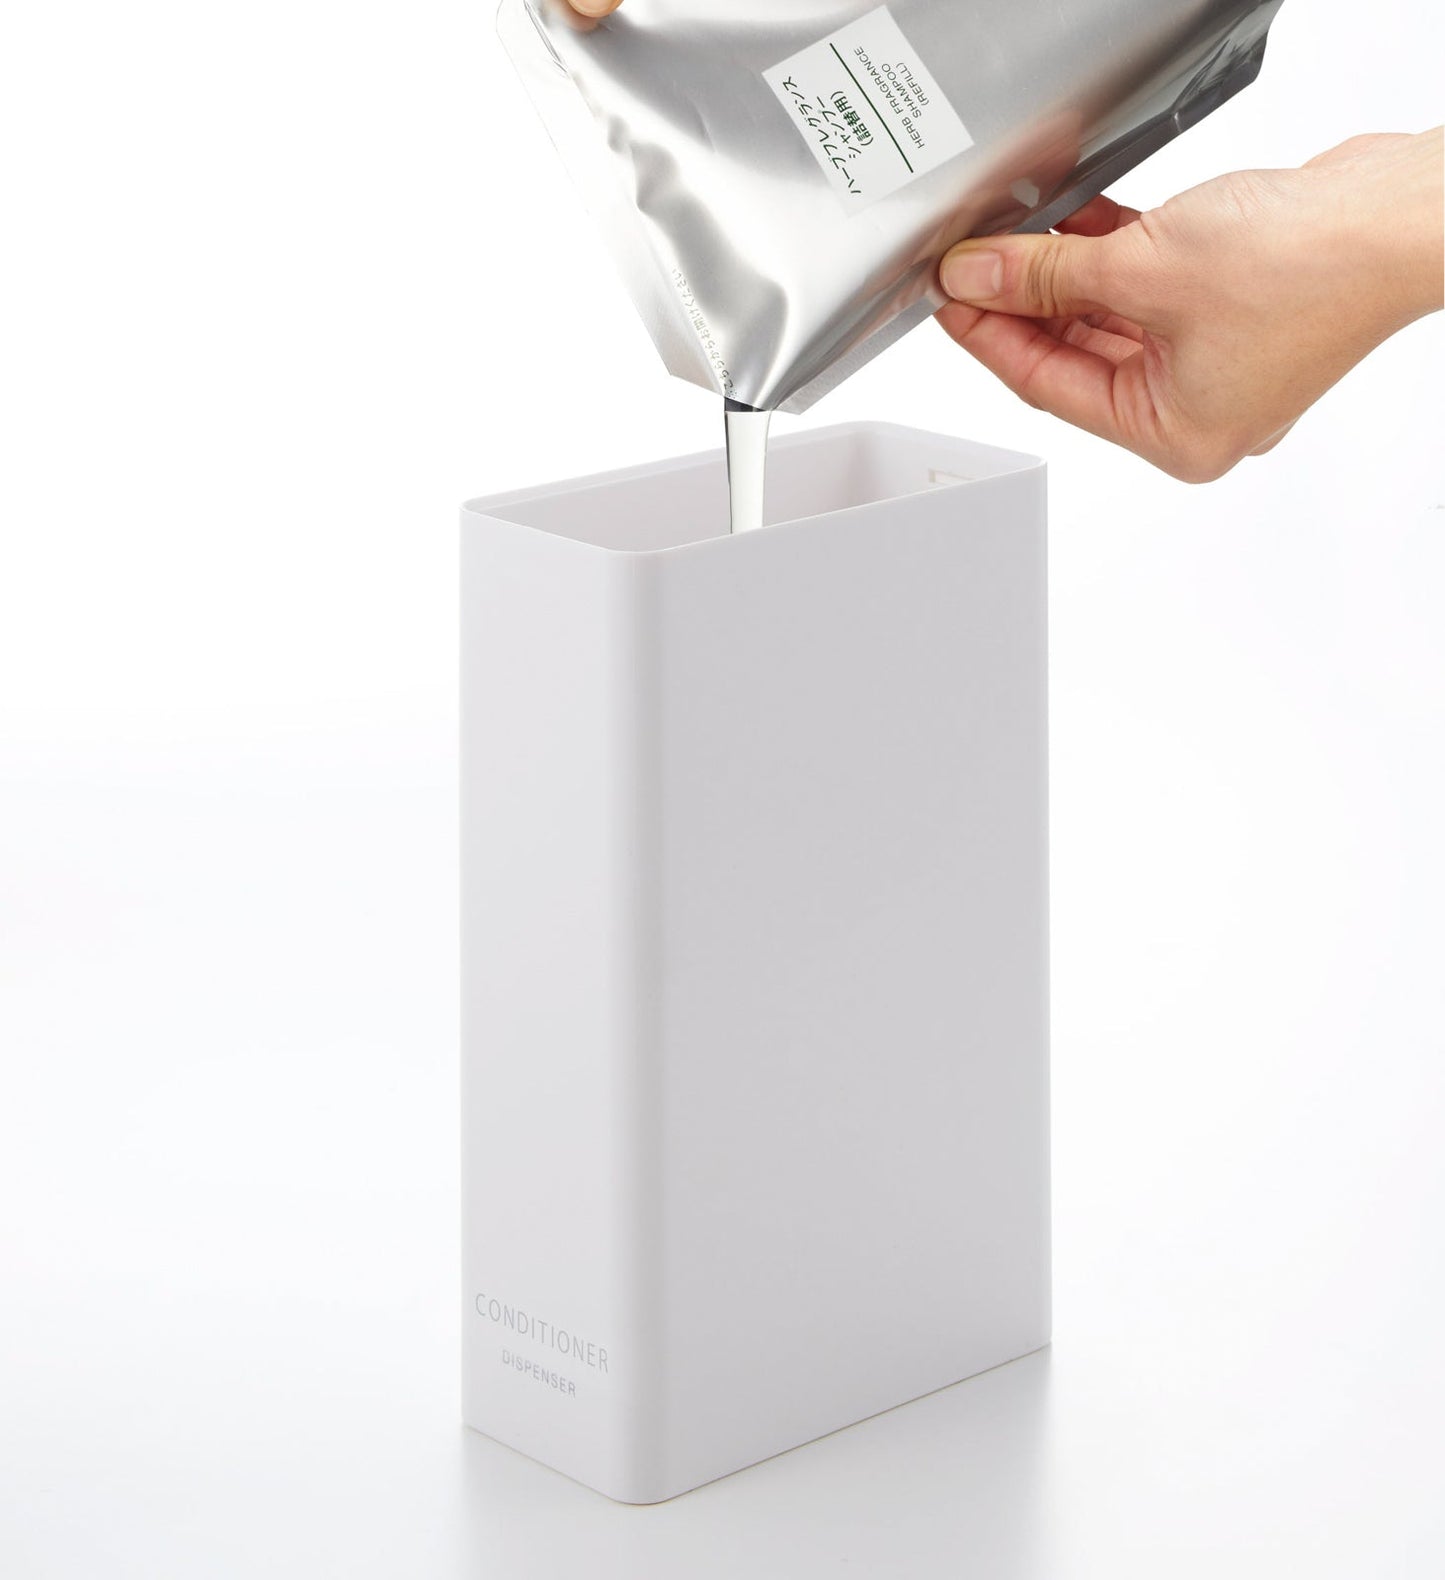 Conditioner Dispenser - Conditioner